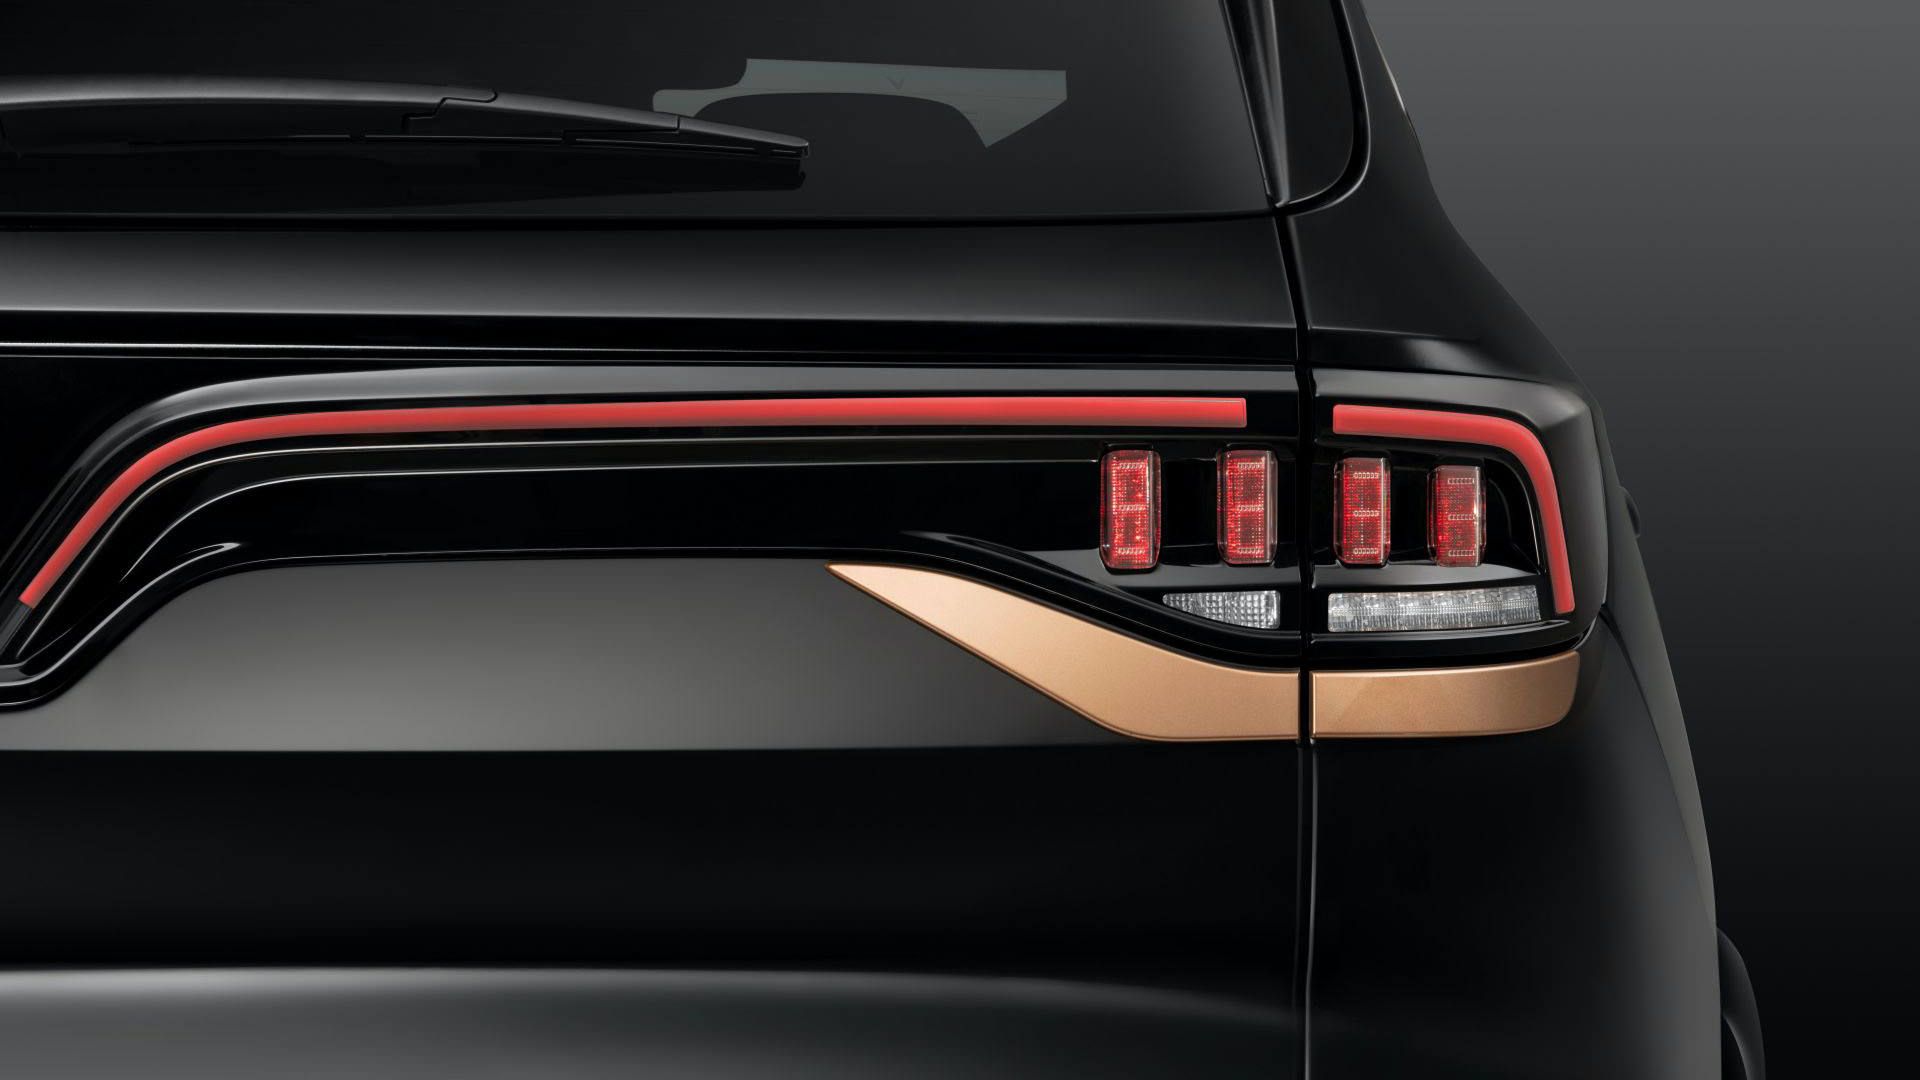 مرجع متخصصين ايران نماي چراغ عقب شاسي بلند لوكس وين فست پرزيدنت / VinFast President Luxury SUV با رنگ مشكي